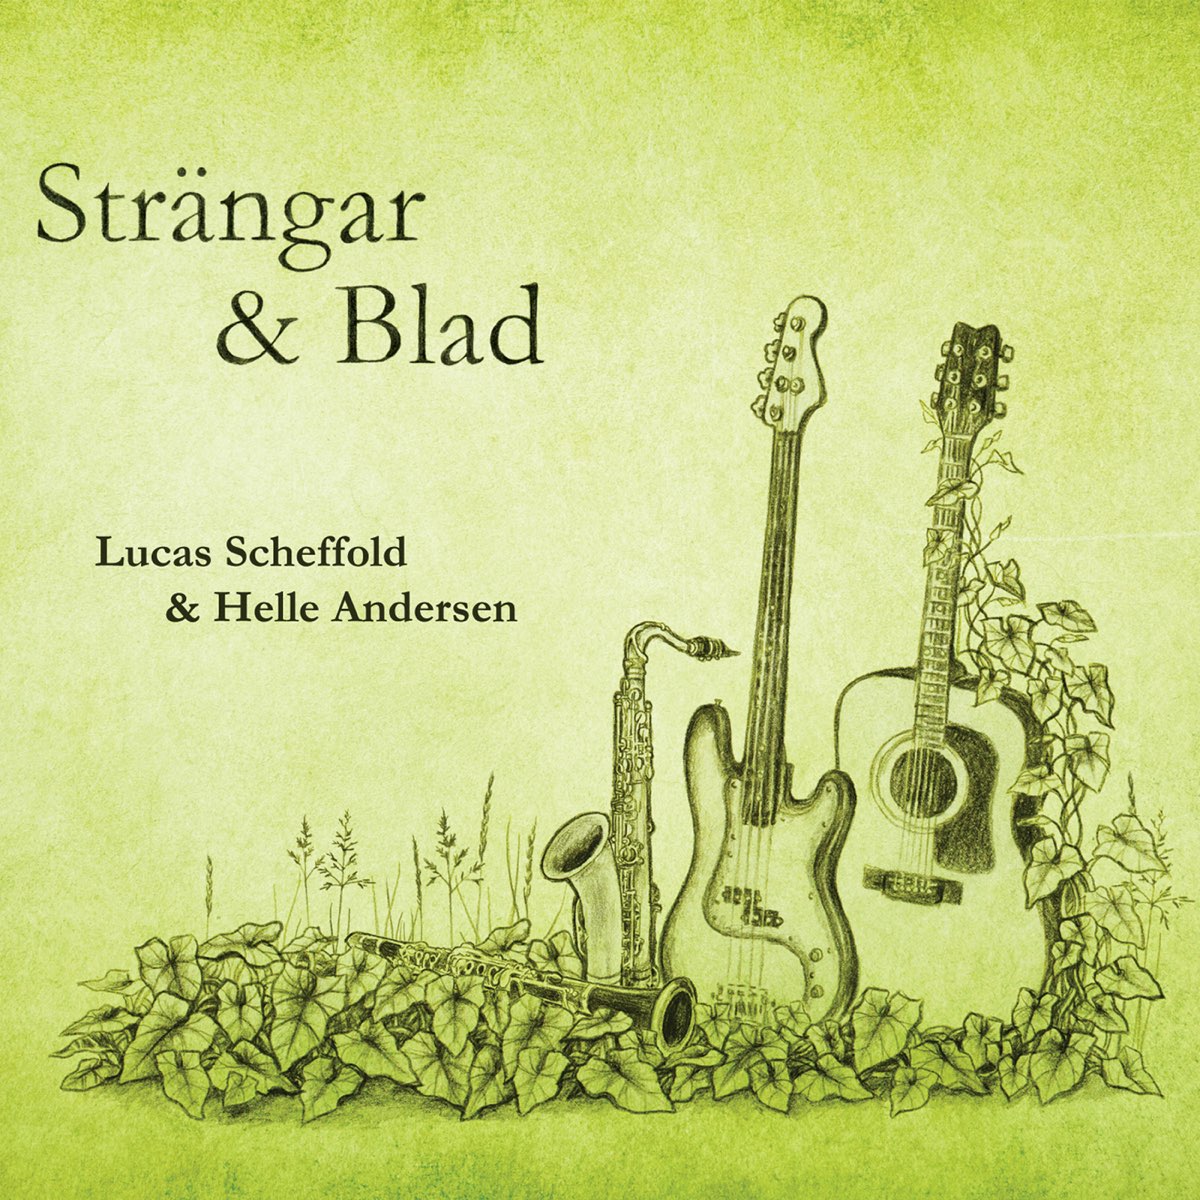 Strängar & Blad - Album by Lucas Scheffold & Helle Andersen - Apple Music